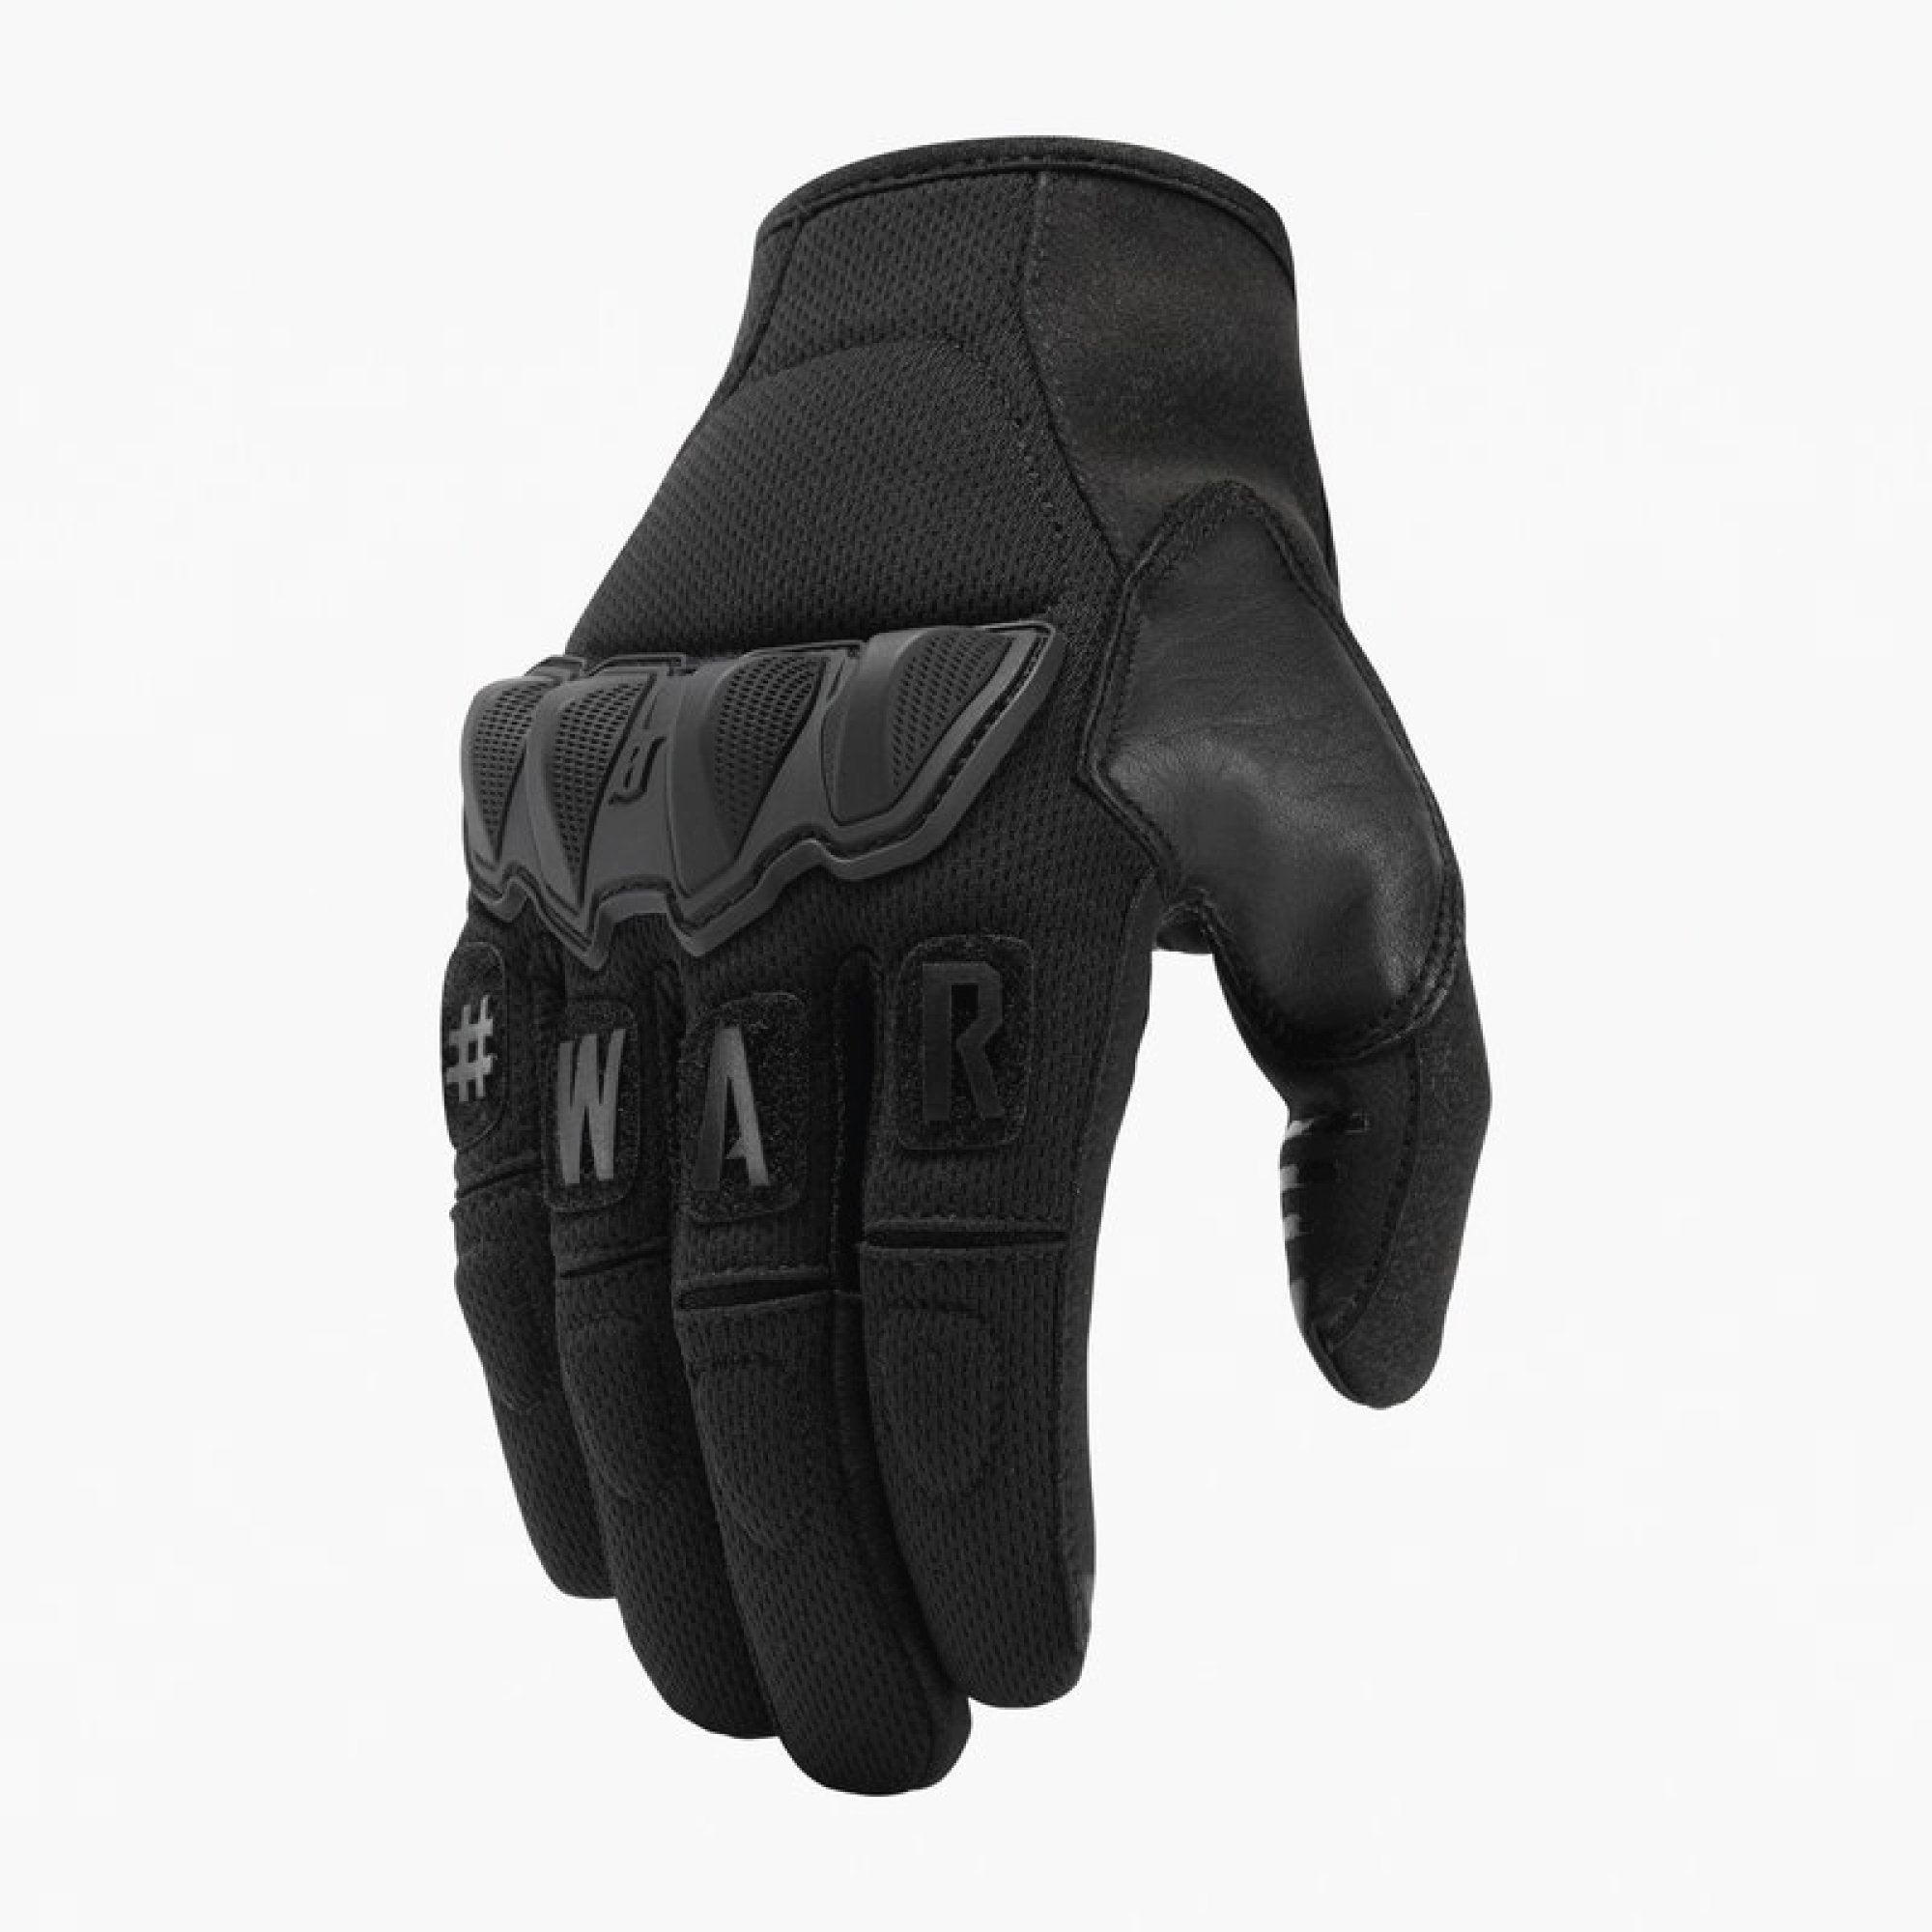 VIKTOS Wartorn Gloves Nightfjall Gloves VIKTOS Extra Small Tactical Gear Supplier Tactical Distributors Australia